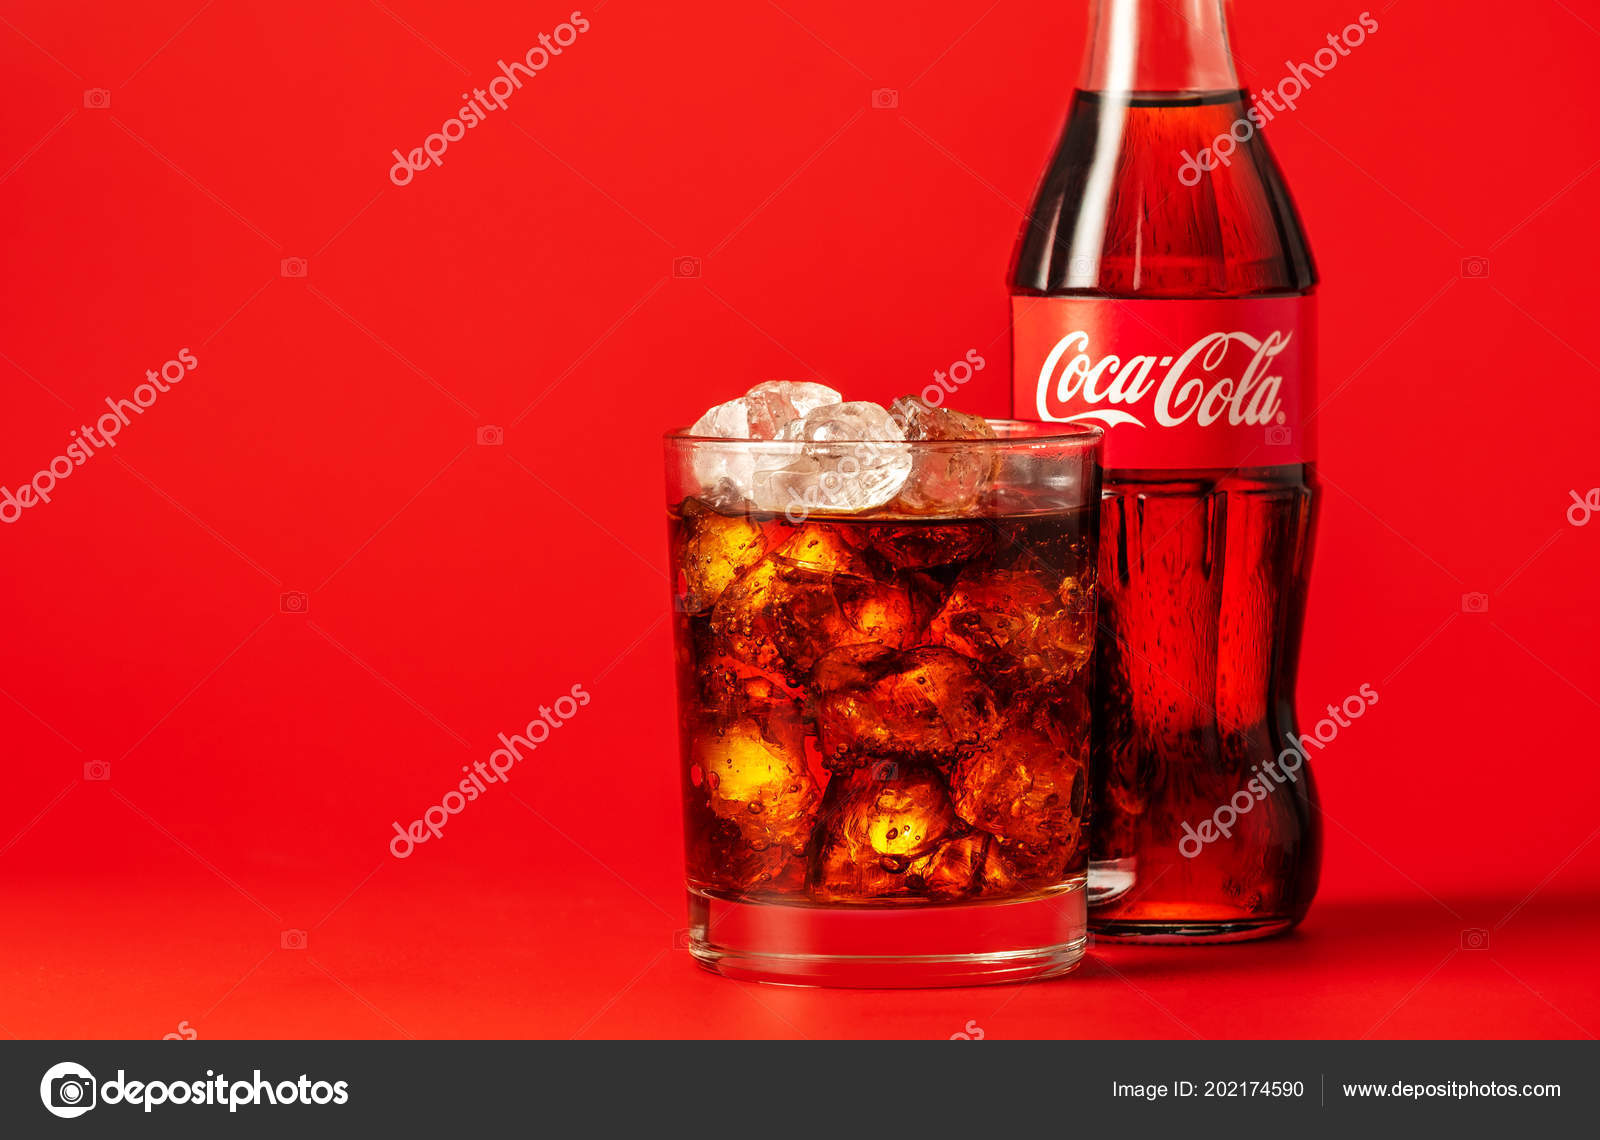 コカコーラ写真素材 ロイヤリティフリーコカコーラ画像 Depositphotos